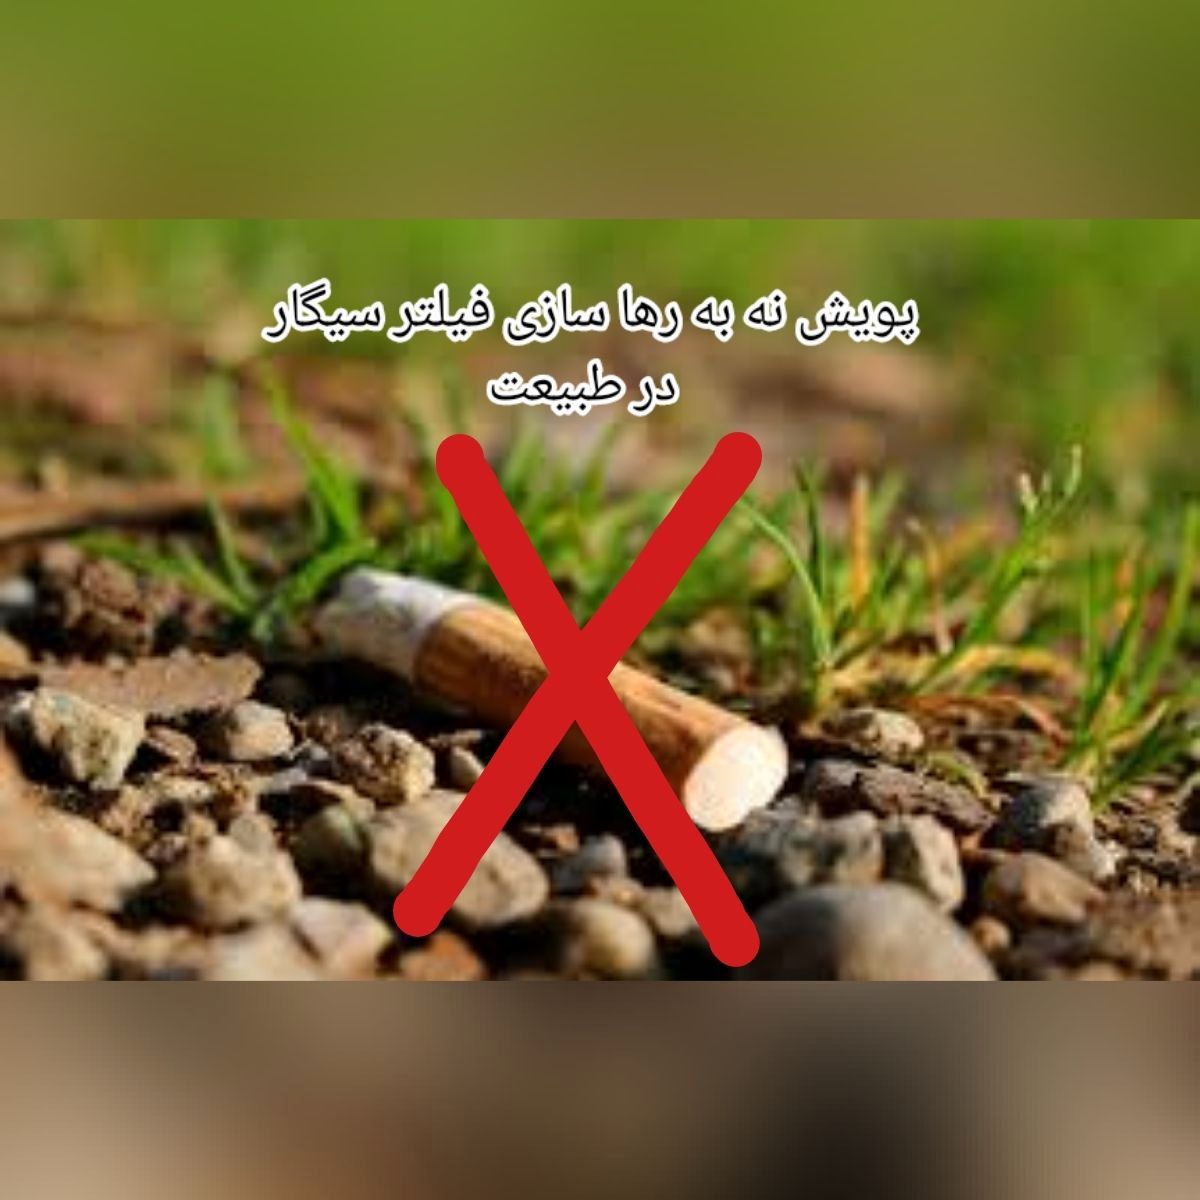 «نه به رها سازی فیلتر سیگار در طبیعت» در منطقه 13